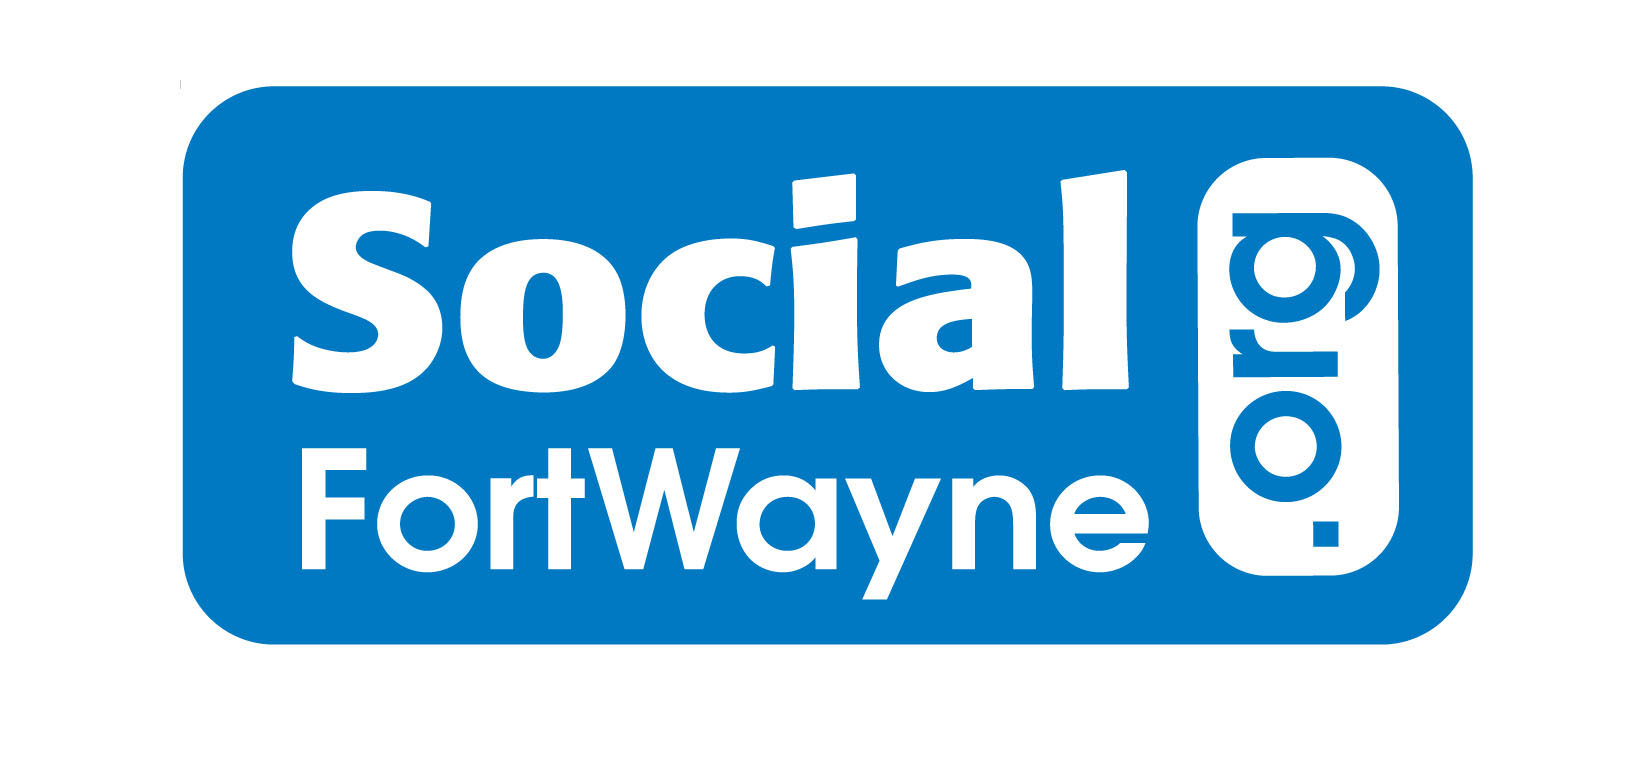 Social Fort Wayne